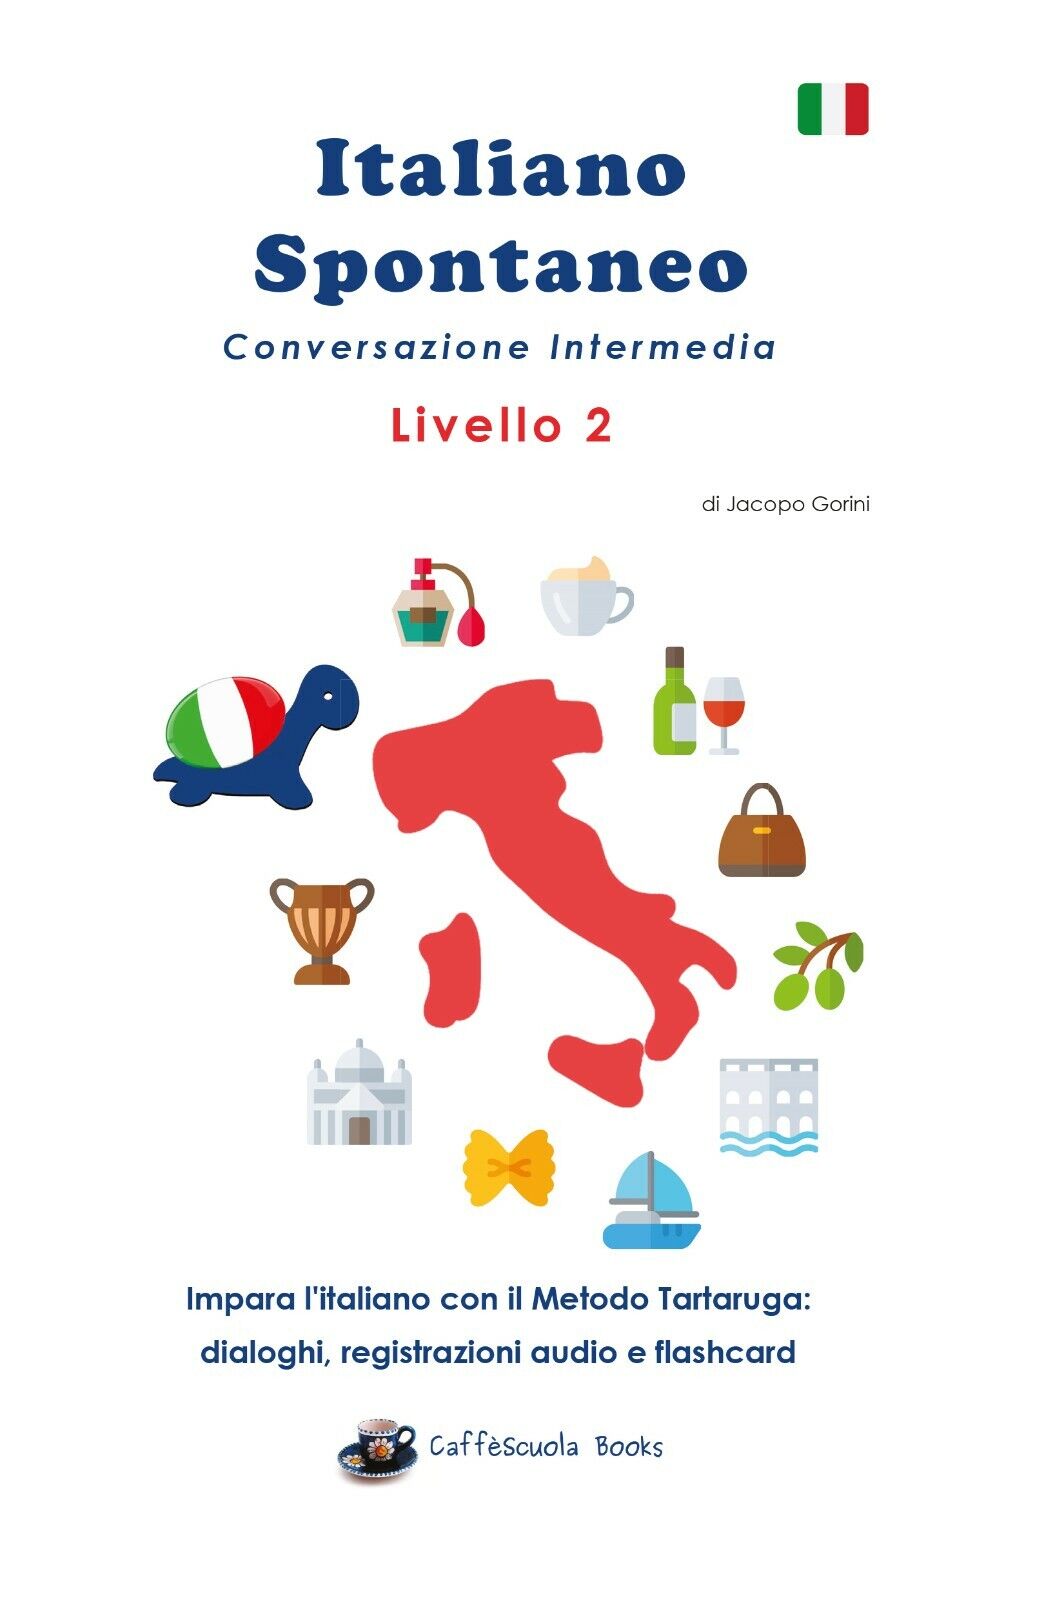 Italiano Spontaneo - Livello 2 di Jacopo Gorini, 2020, Youcanprint